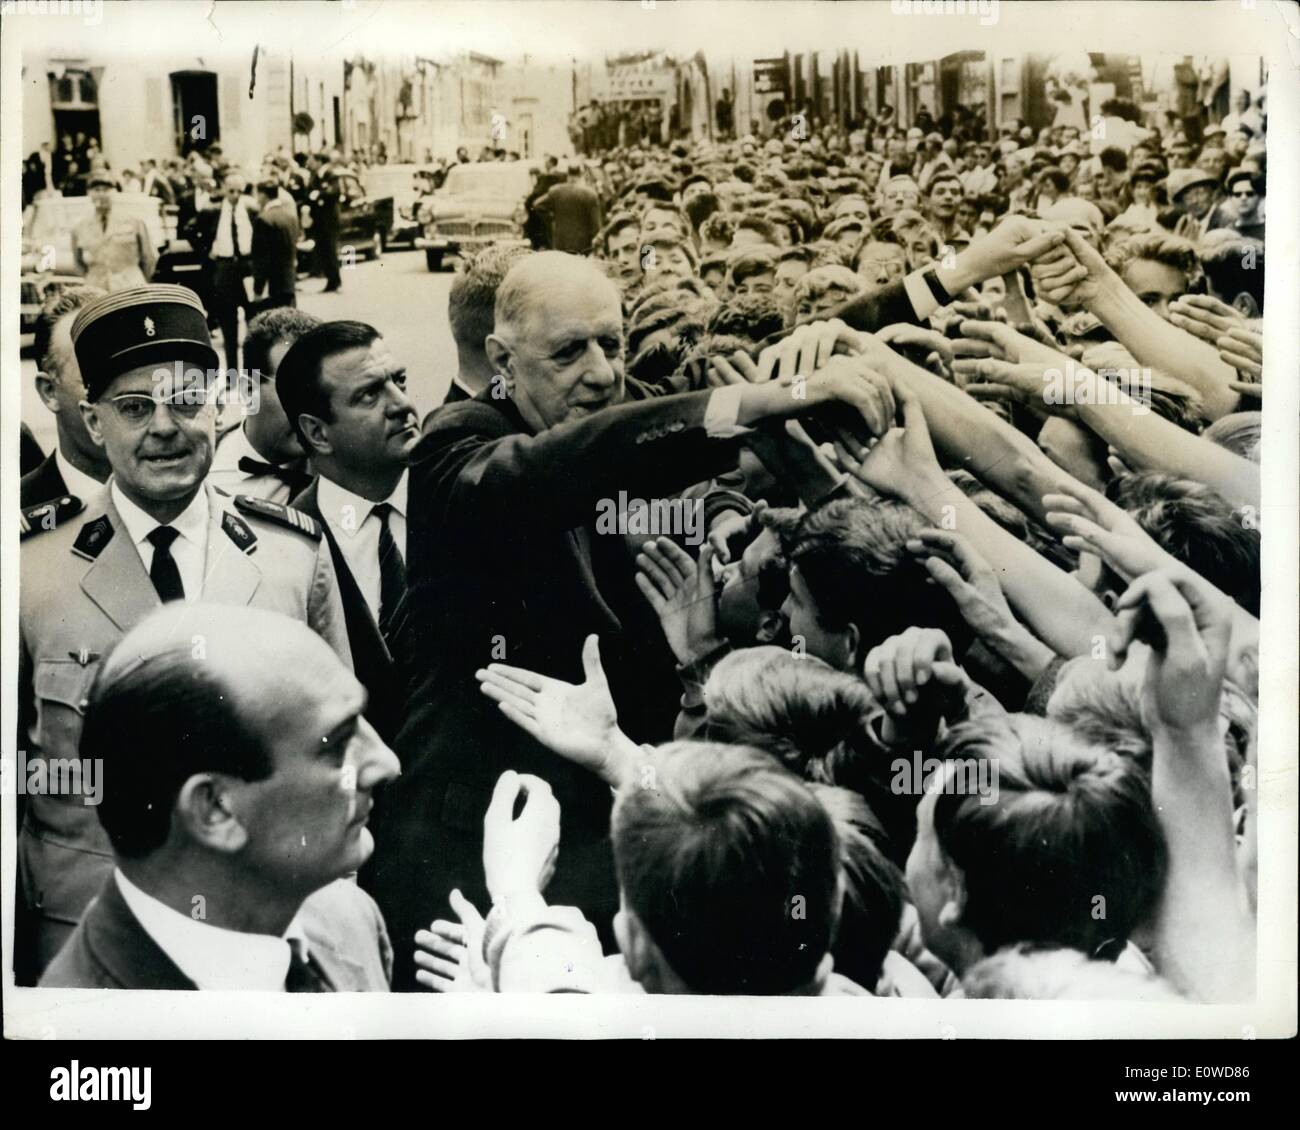 Giugno 06, 1962 - De Gaulle incontra il popolo: nonostante recenti rivelazioni che tenta sulla sua vita furono in imminente, il generale de Gaulle ha intrapreso il suo soddisfare-le persone tour della Francia orientale con una rinuncia quasi spaventoso. Essa è parte del fascino che il generale esercita sul suo popolo. Mostra fotografica. Una dozzina di allungare le mani a salutare il generale durante il suo tour. Il O.A.S. hanno drammaticamente ha annunciato che il terrorismo sarà immediatamente fine. Foto Stock